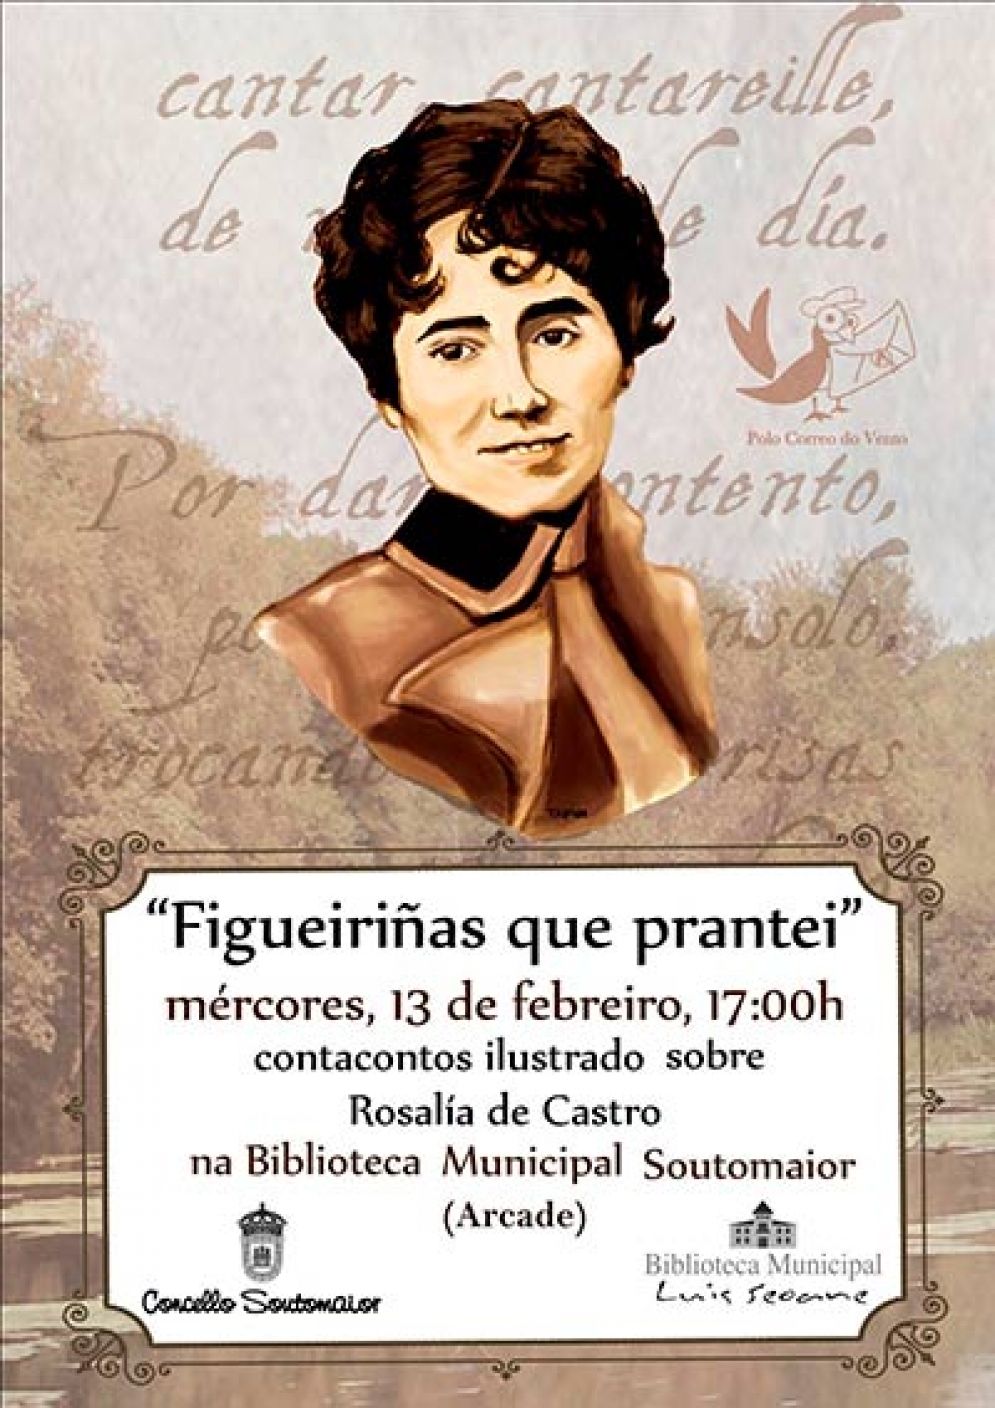 Contacontos ilustrado sobre Rosalía de Castro